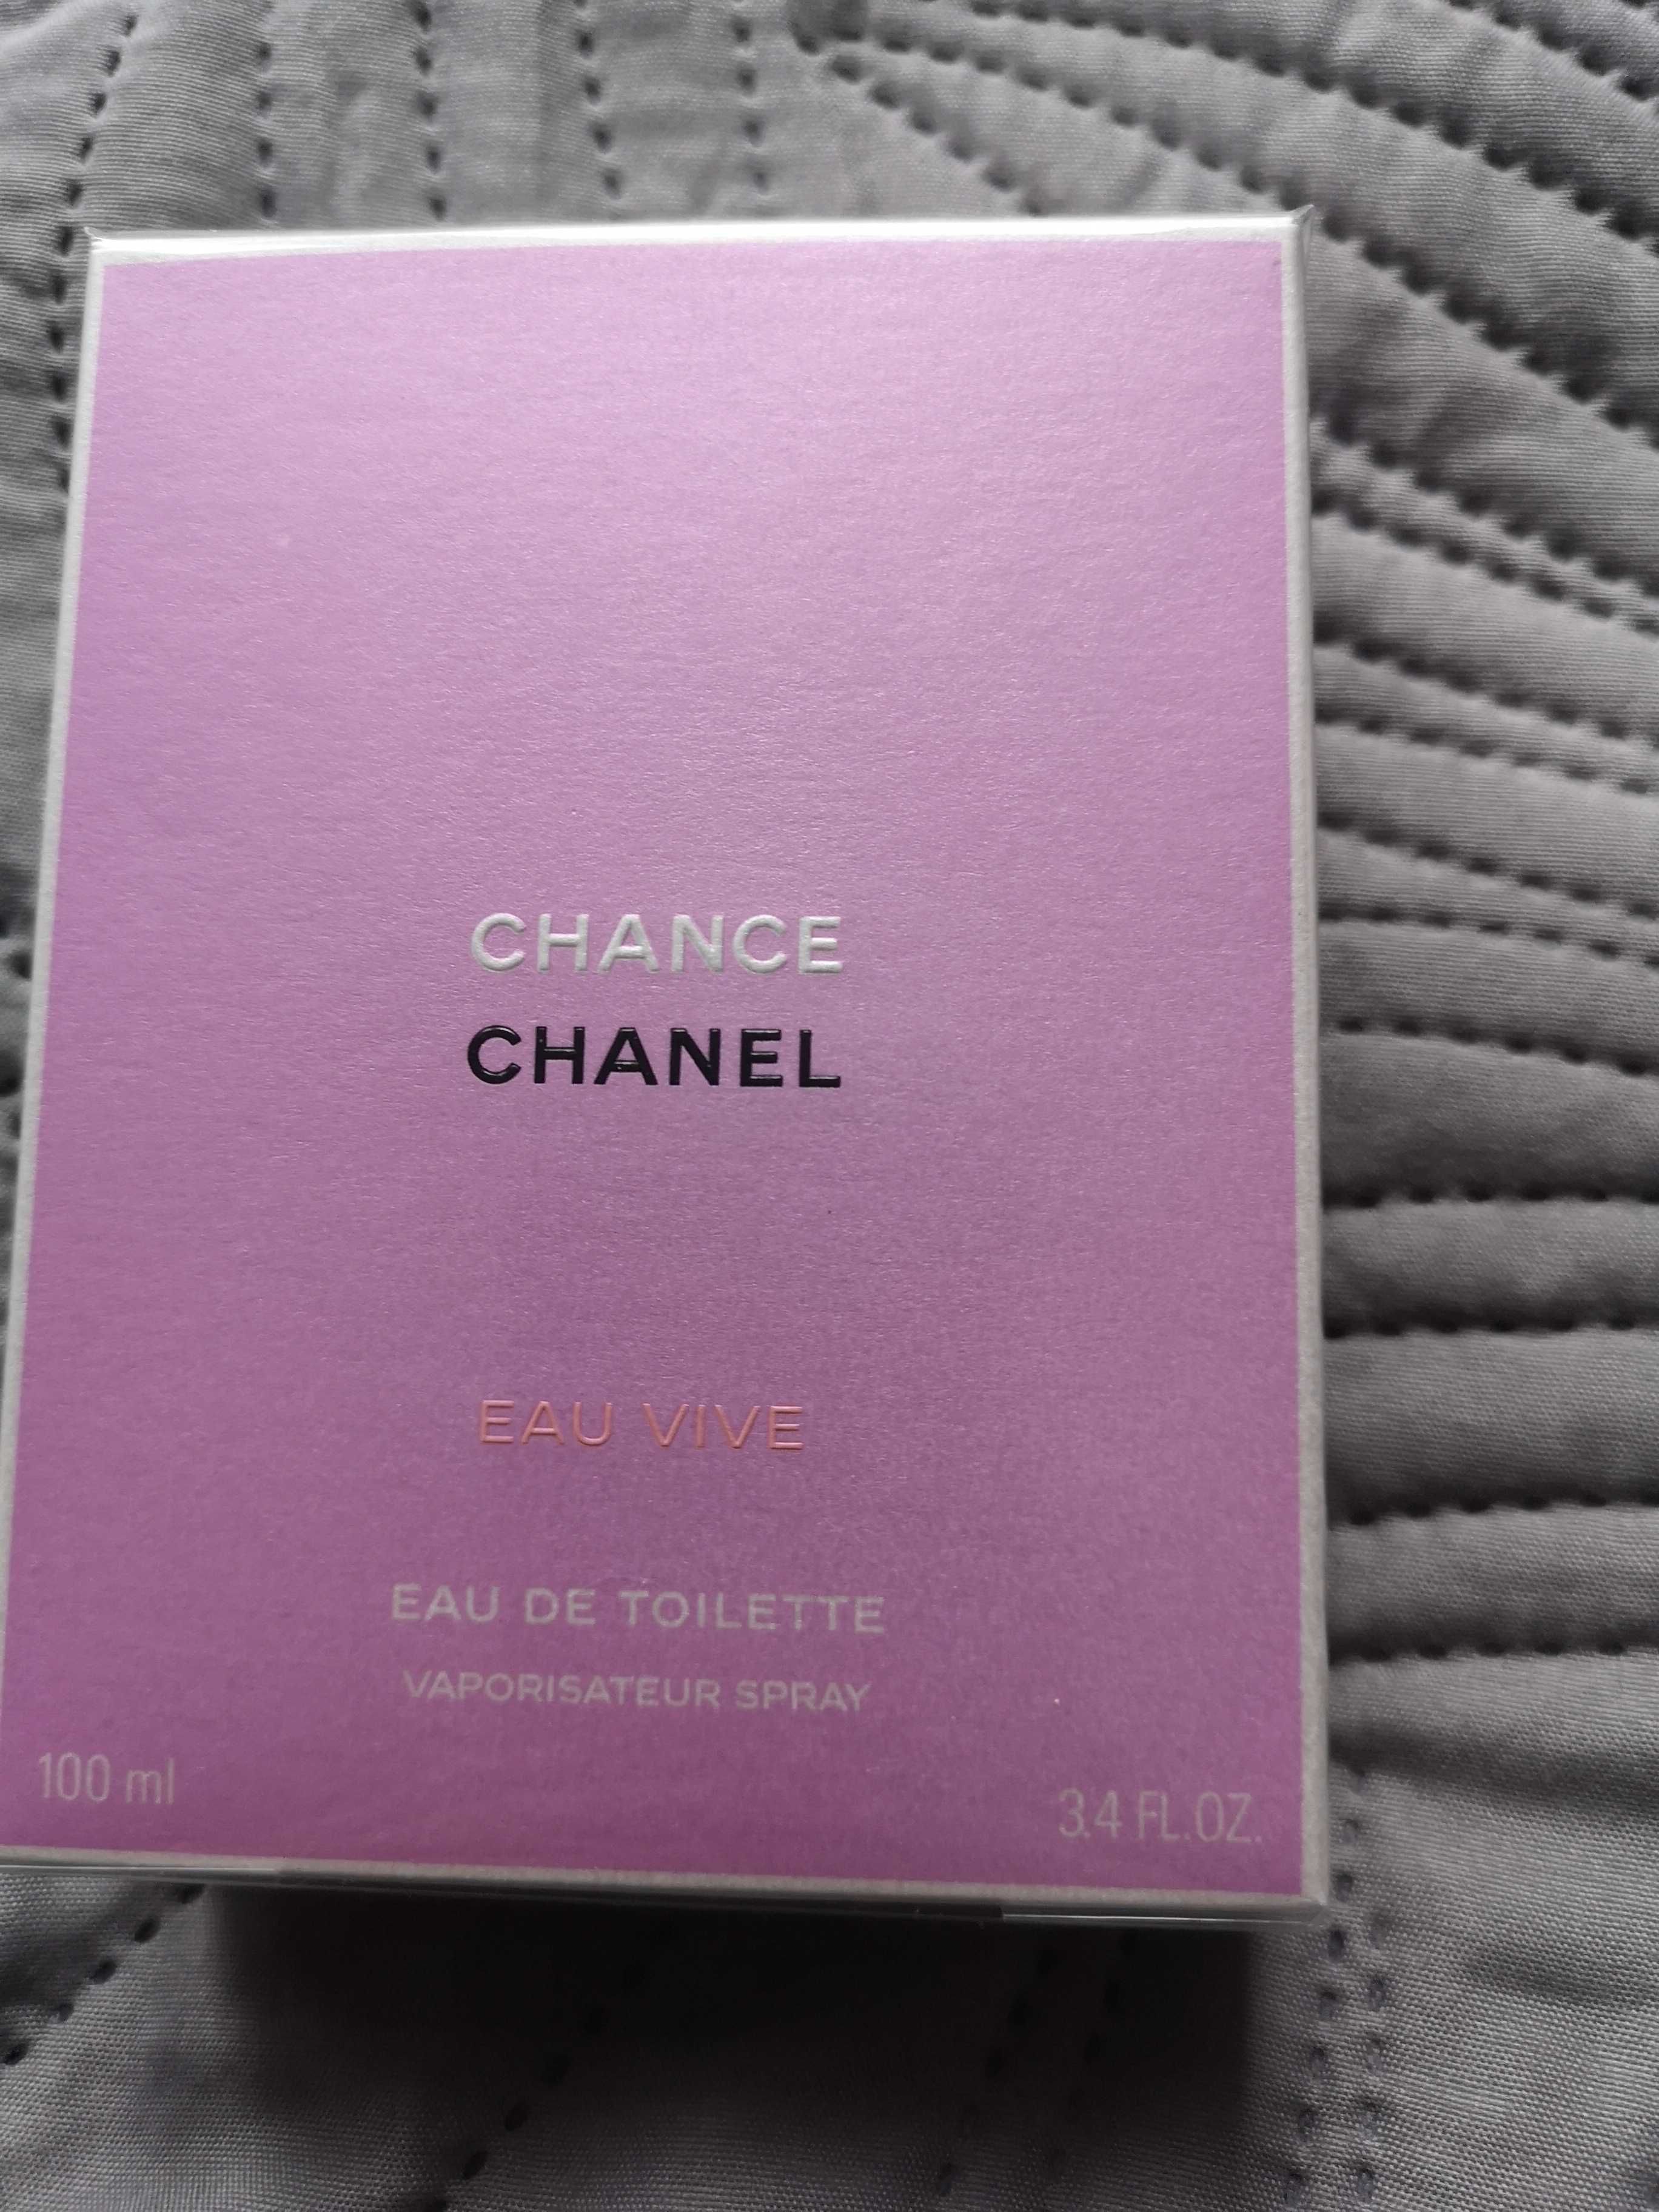 Chanel Chance eau vive eau de toilette 100ml 100%oryginalne